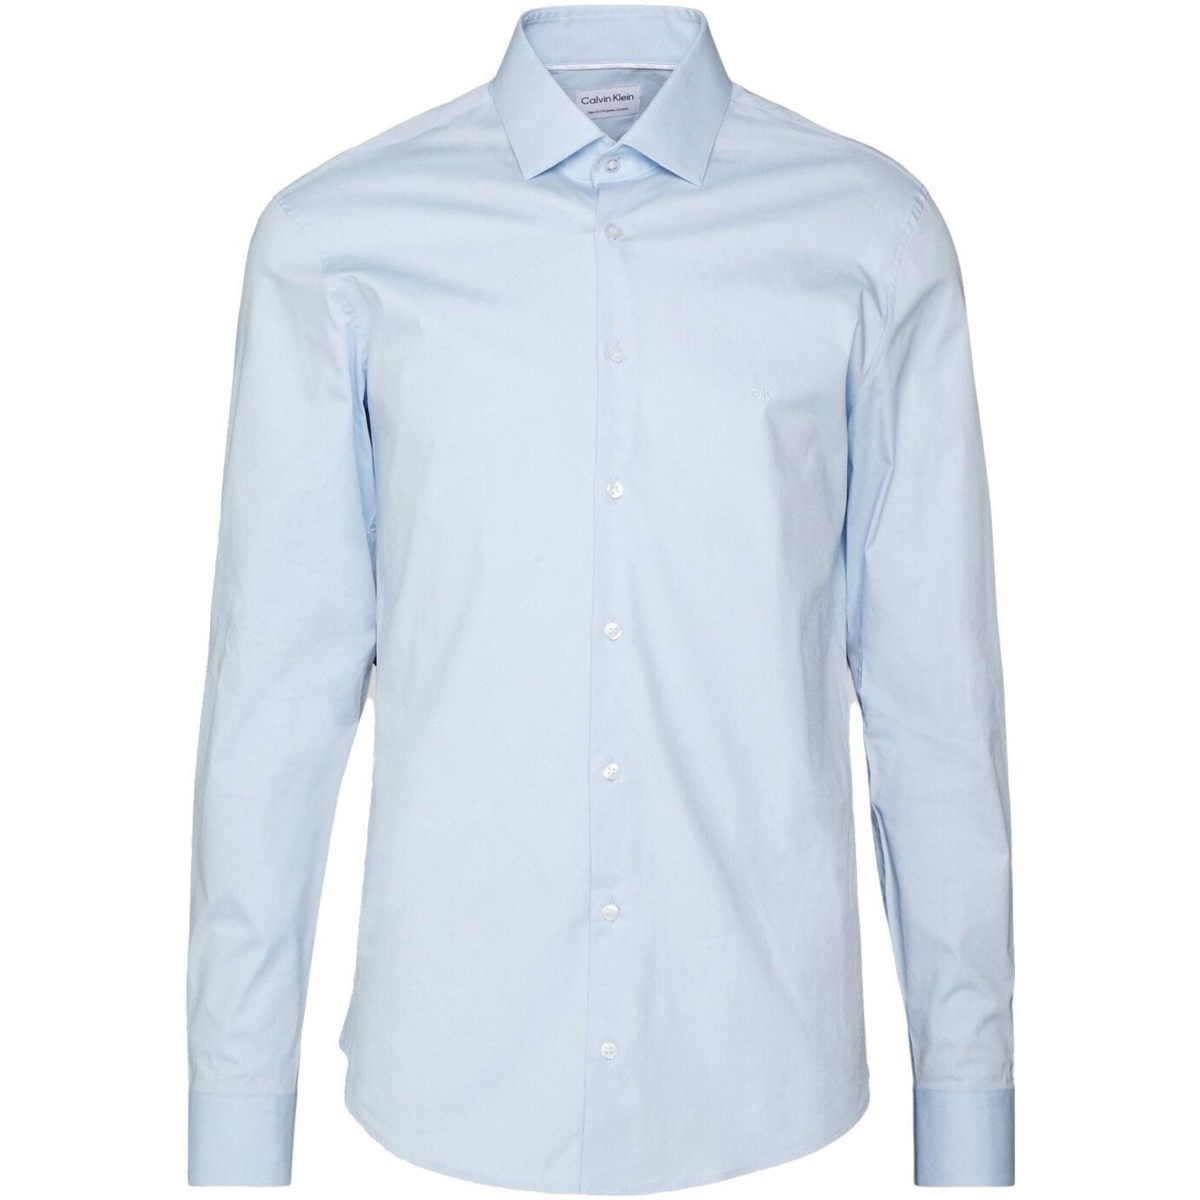 Textil Muži Košile s dlouhymi rukávy Calvin Klein Jeans K10K108229 Modrá